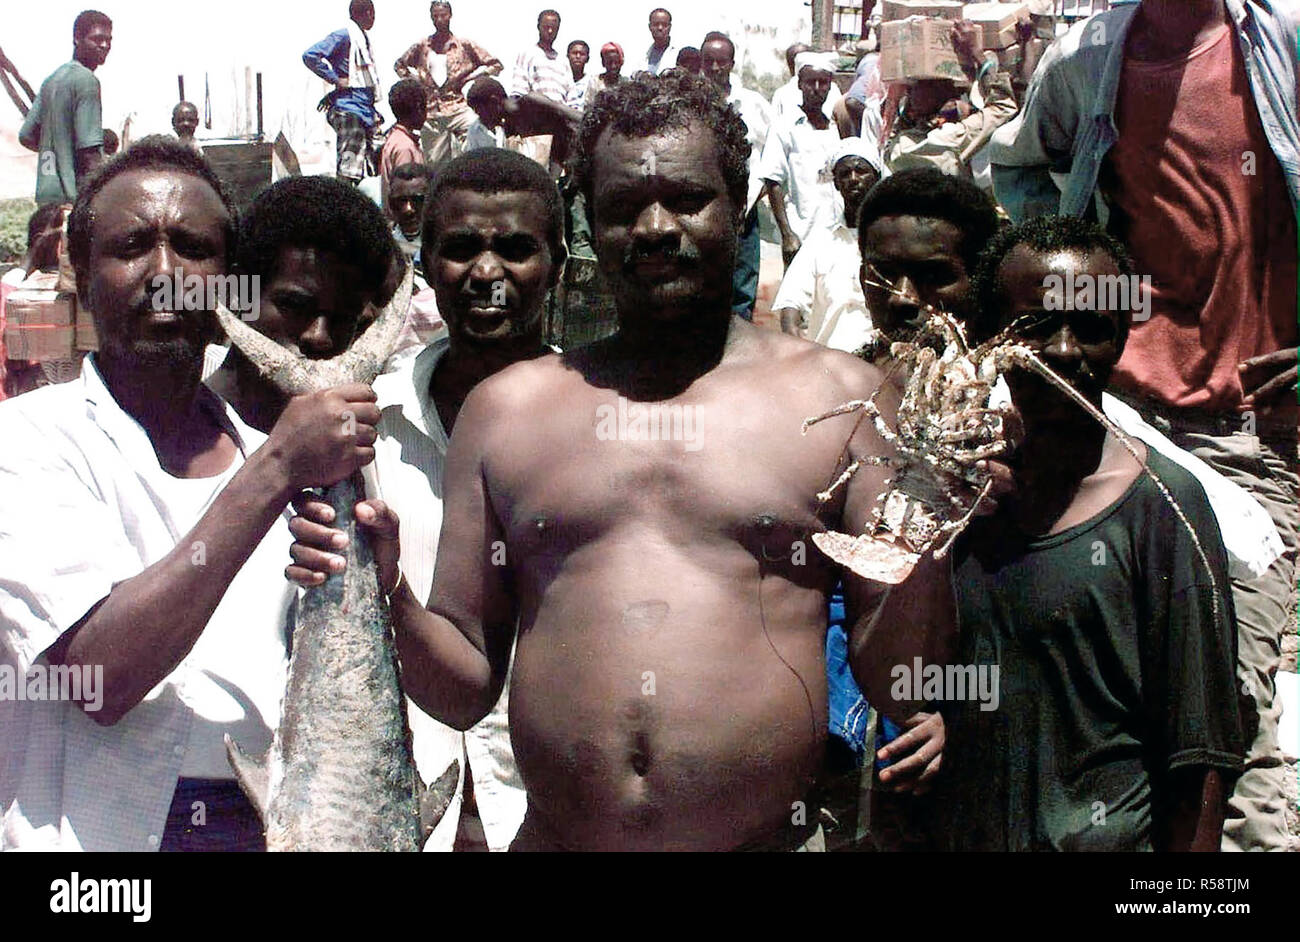 1993 - Deux hommes somaliens font face à la caméra et de maintenir certains des fruits de mer disponible à un marché sur la plage à Mogadiscio. Quatre autres hommes somaliens se tenir juste derrière les deux premières et font face à la caméra. Banque D'Images